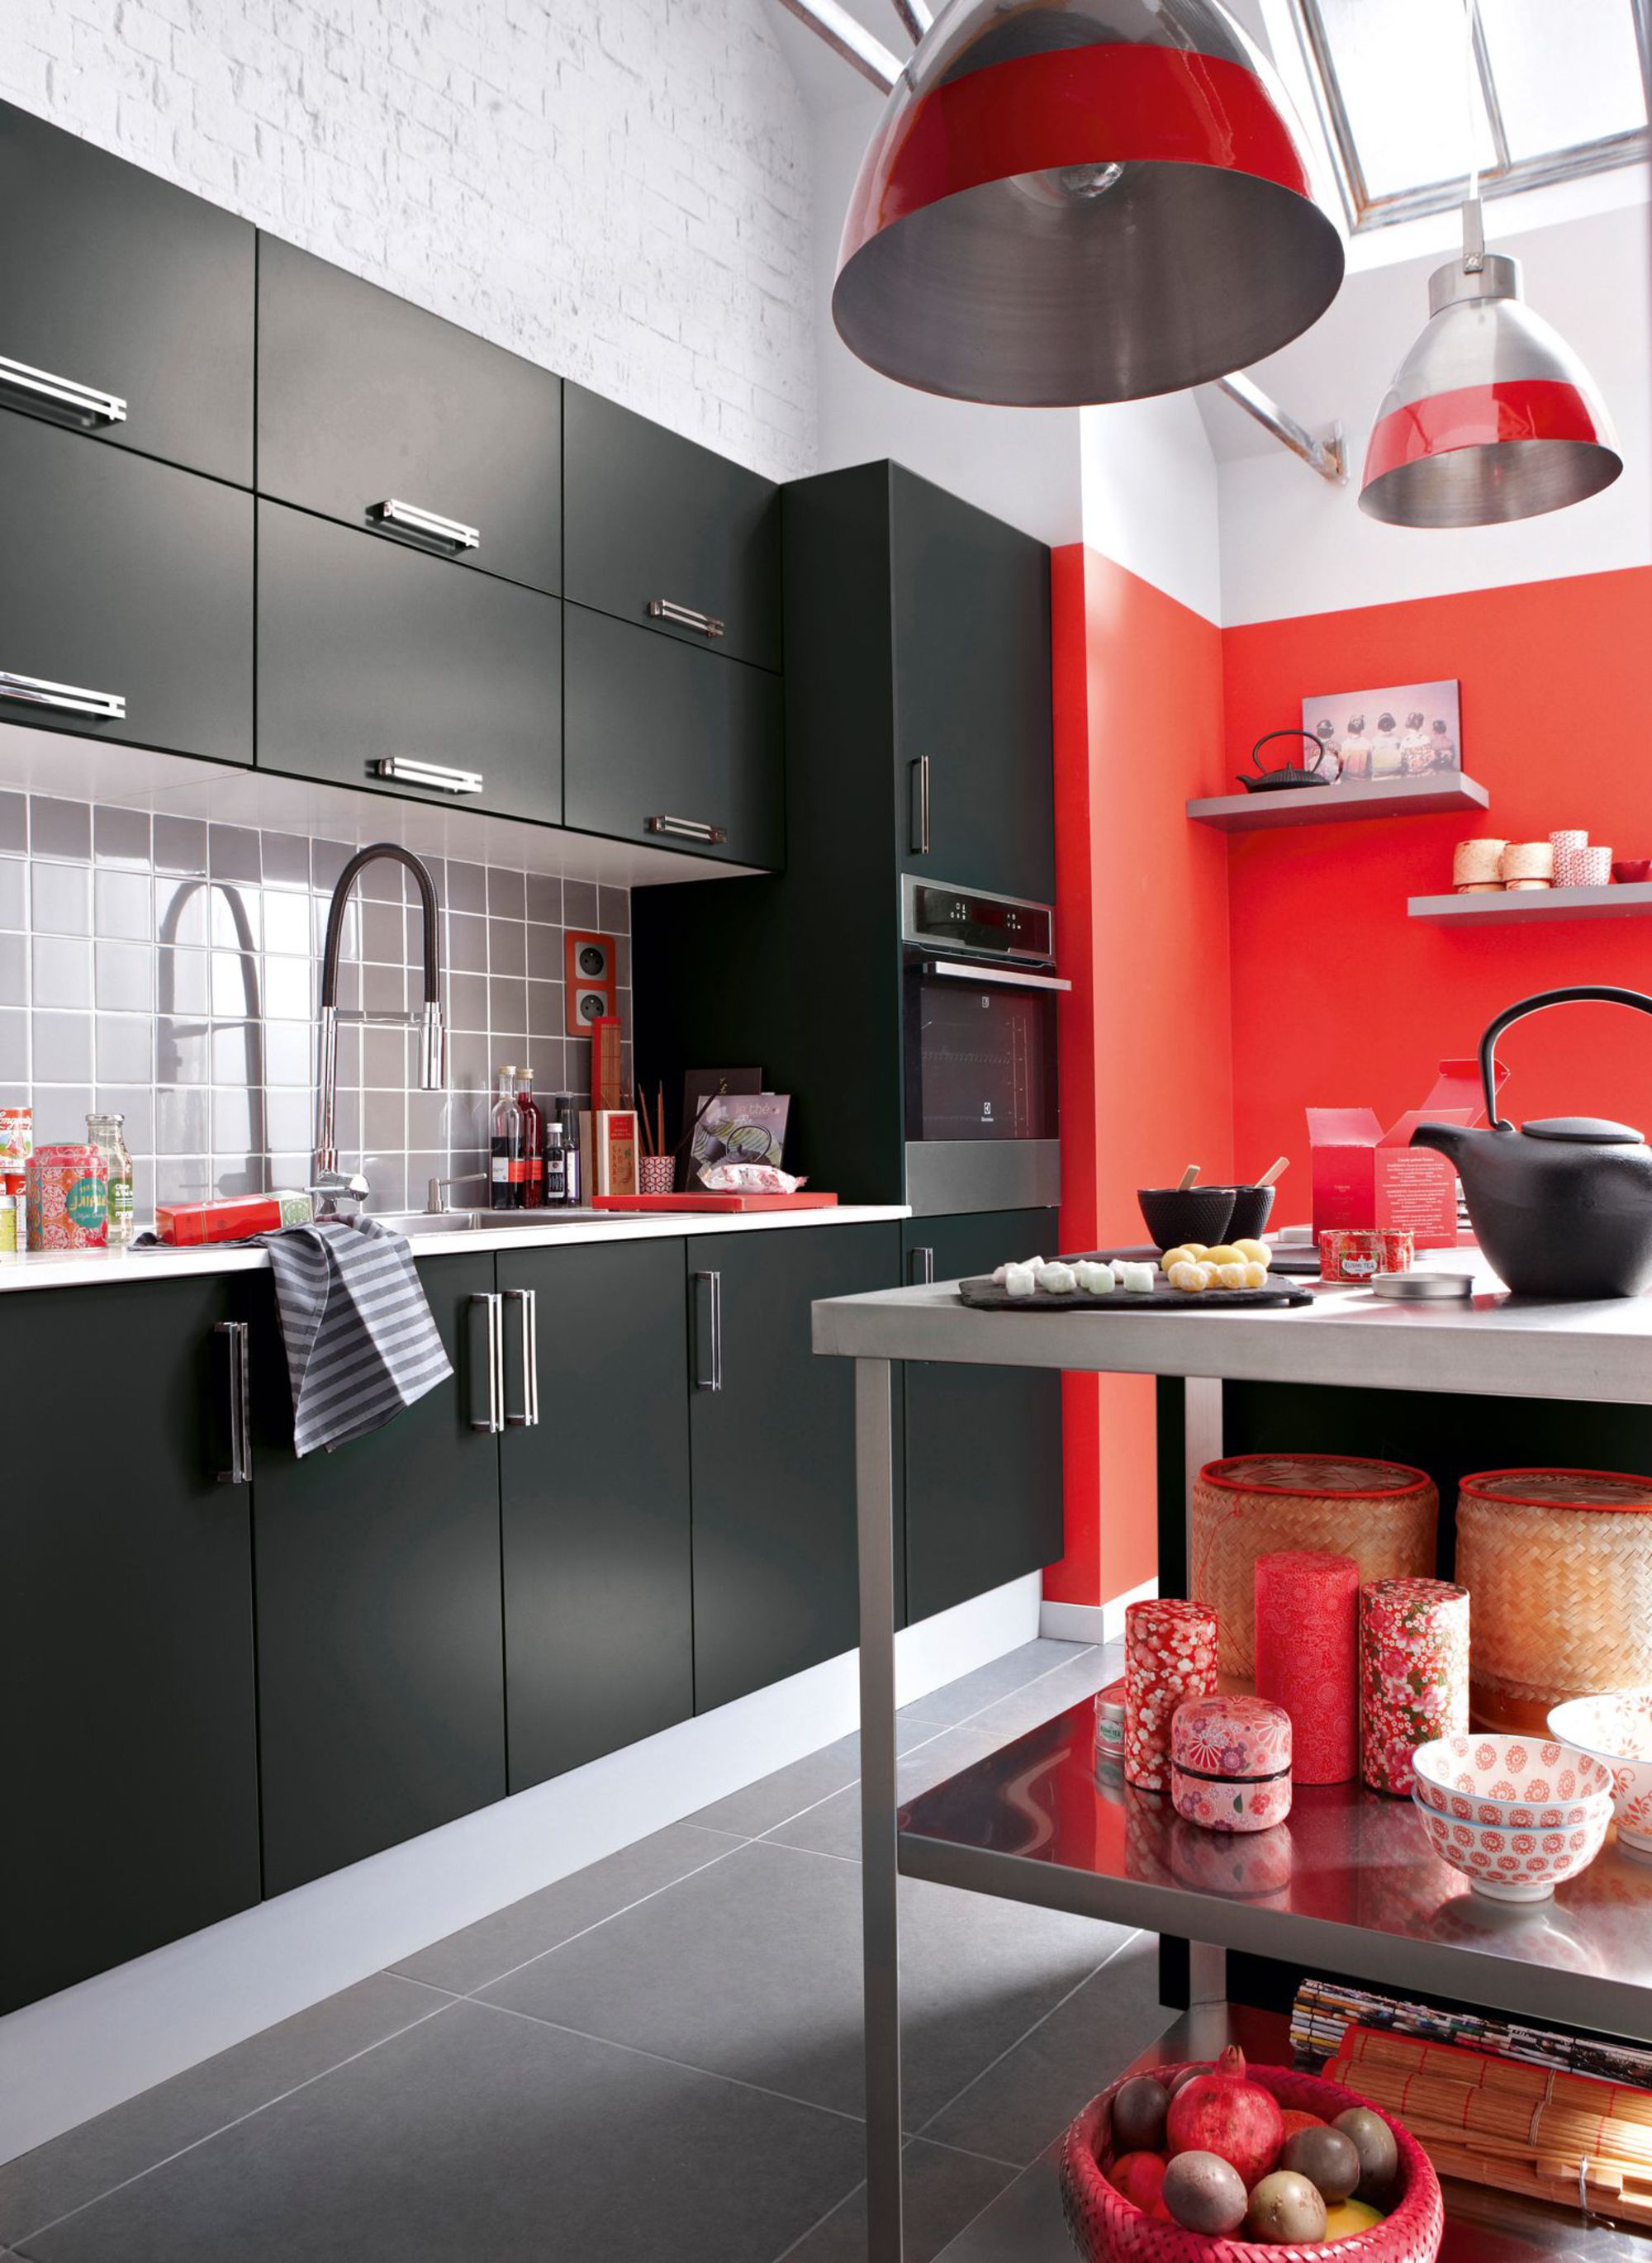 Cuisine rouge et noire - couleurs des murs de cuisine